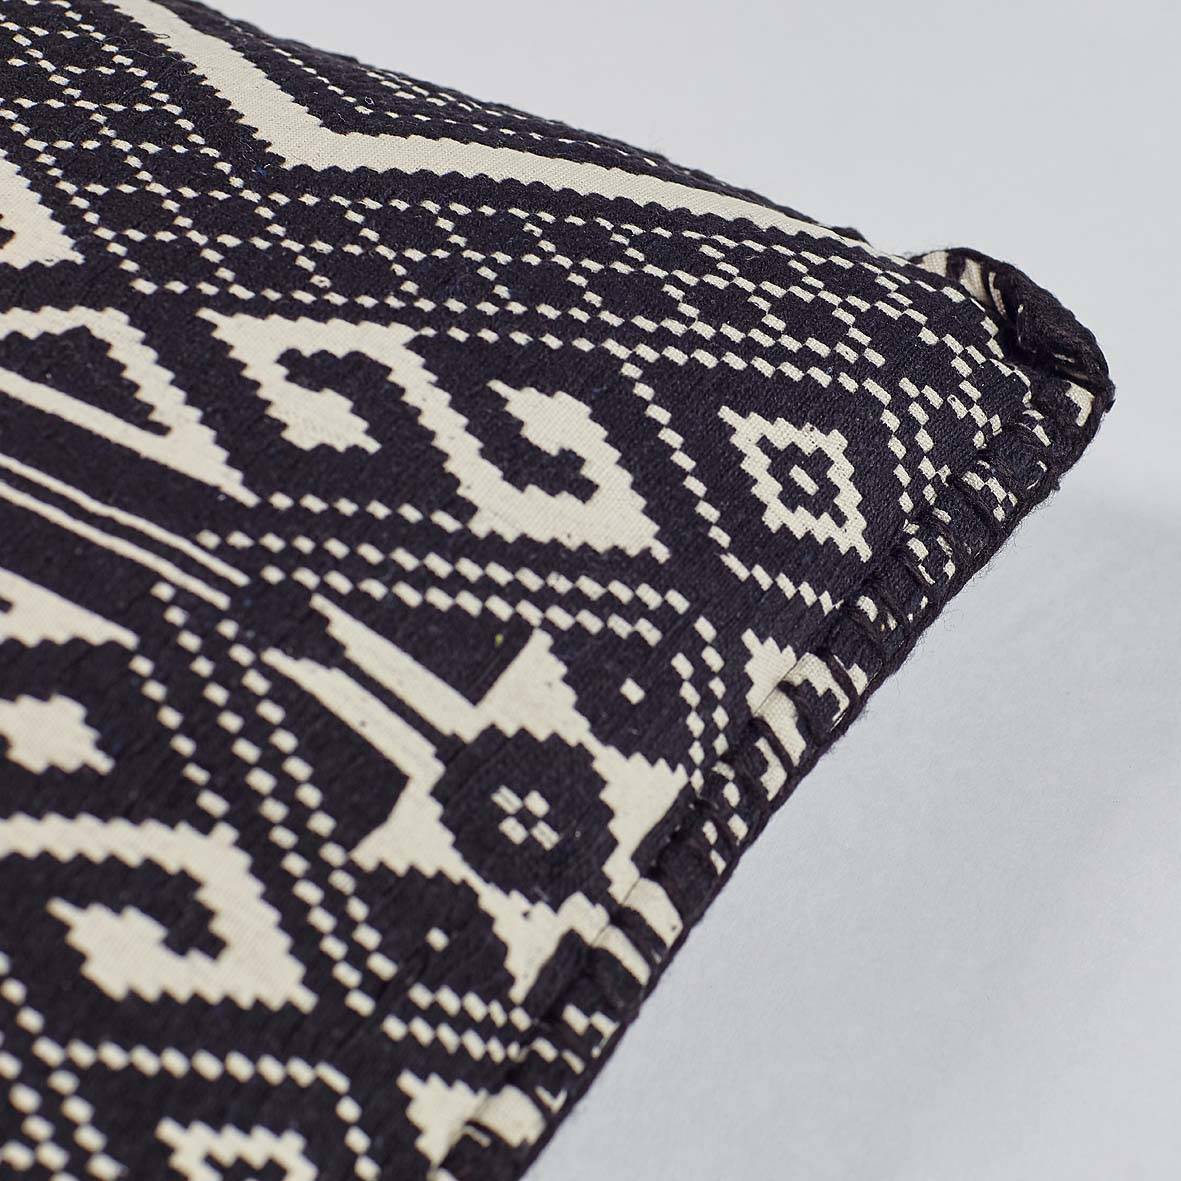 Черно-белая декоративная подушка с этническим орнаментом из серии Handloom